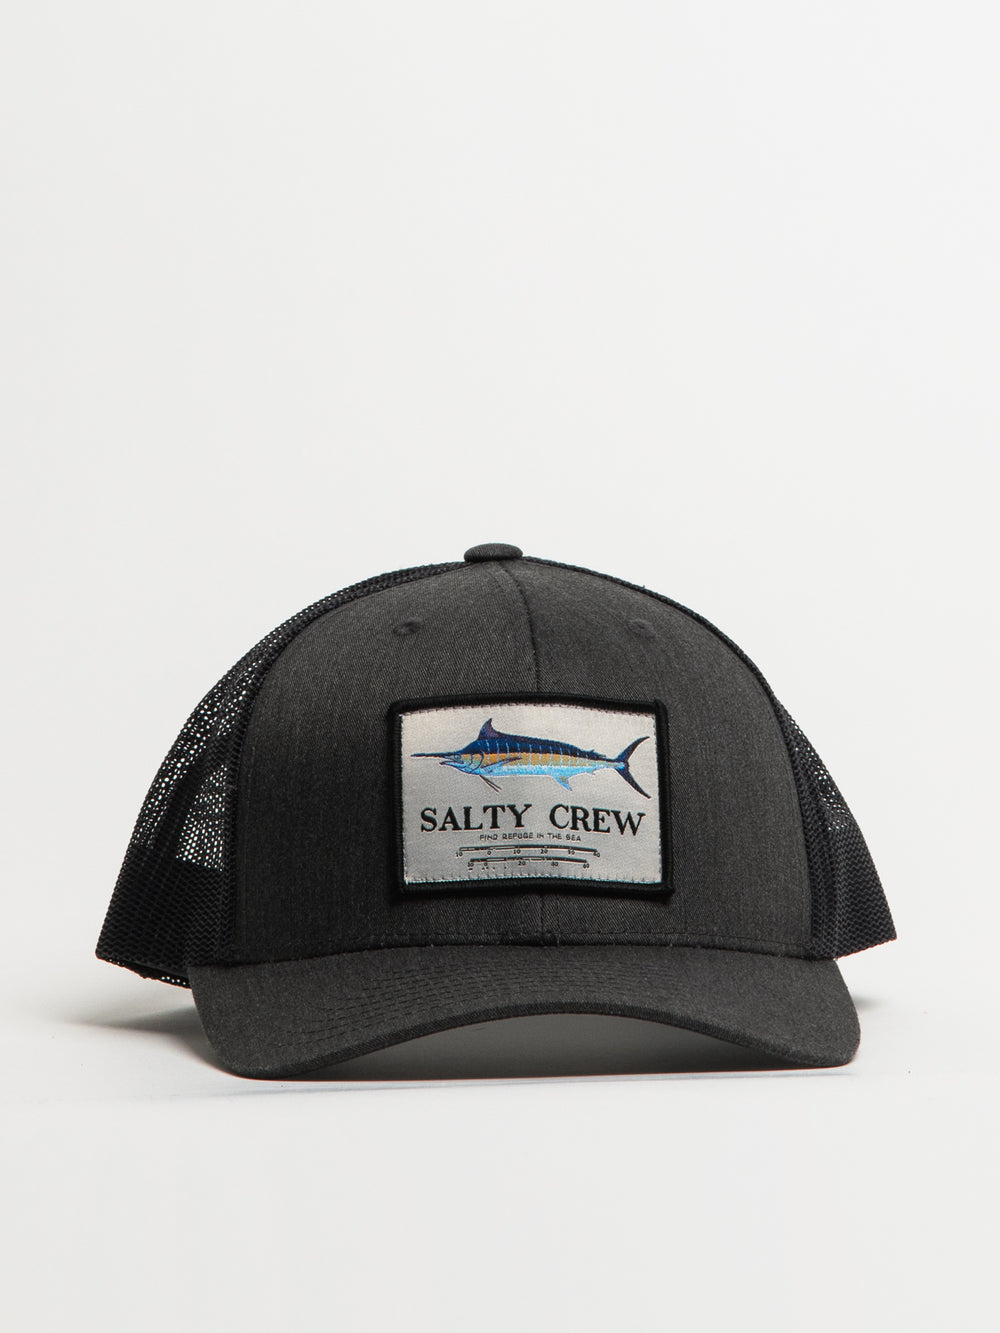 SALTY CREW MARLIN MOUNT RETRO TRUCKER HAT